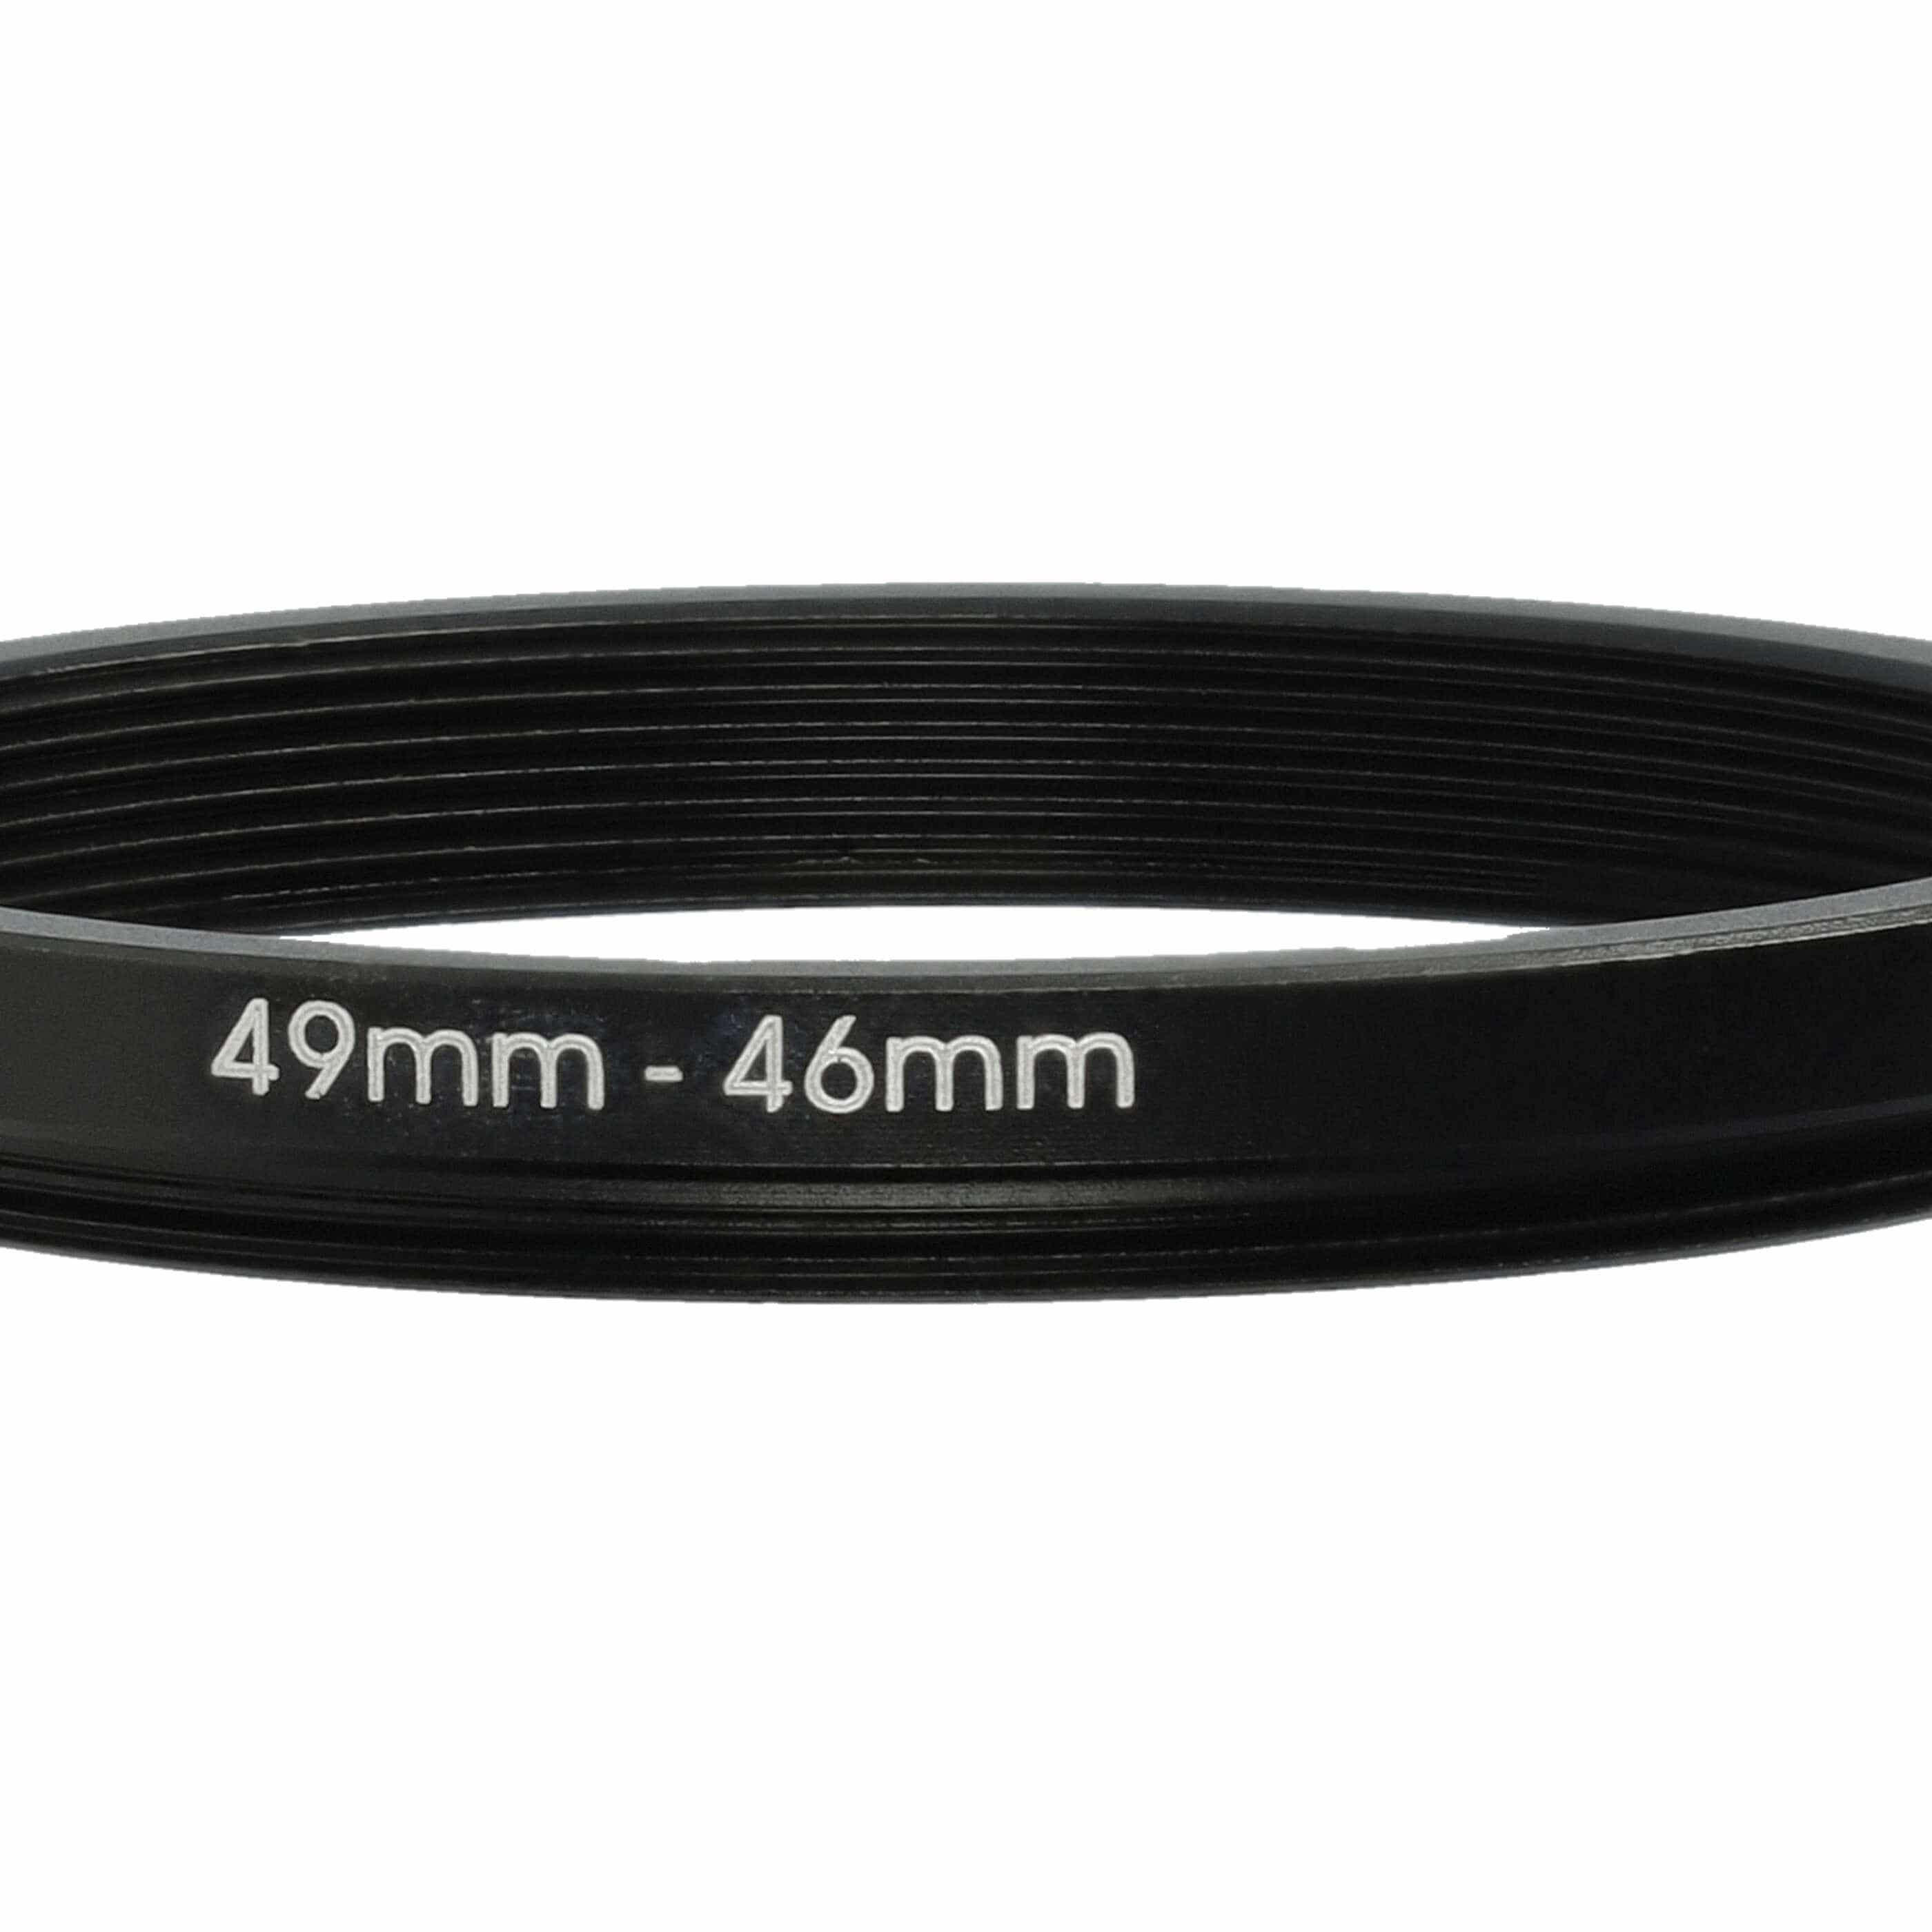 Anillo adaptador Step Down de 49 mm a 46 mm para objetivo de la cámara - Adaptador de filtro, metal, negro